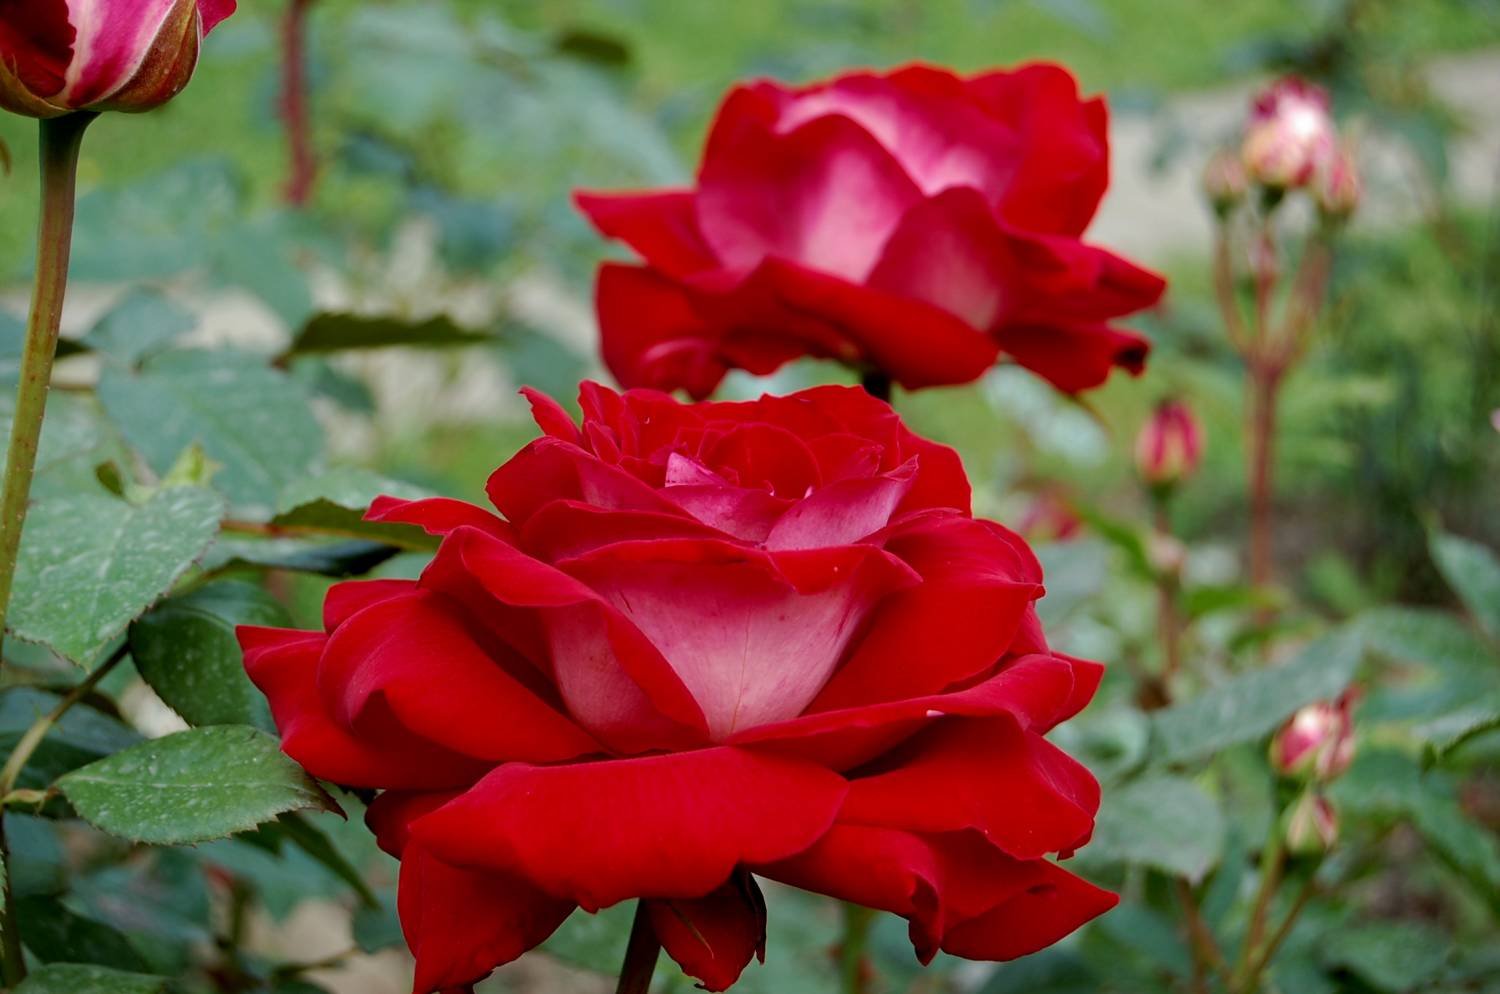 Роза Шато де Версаль